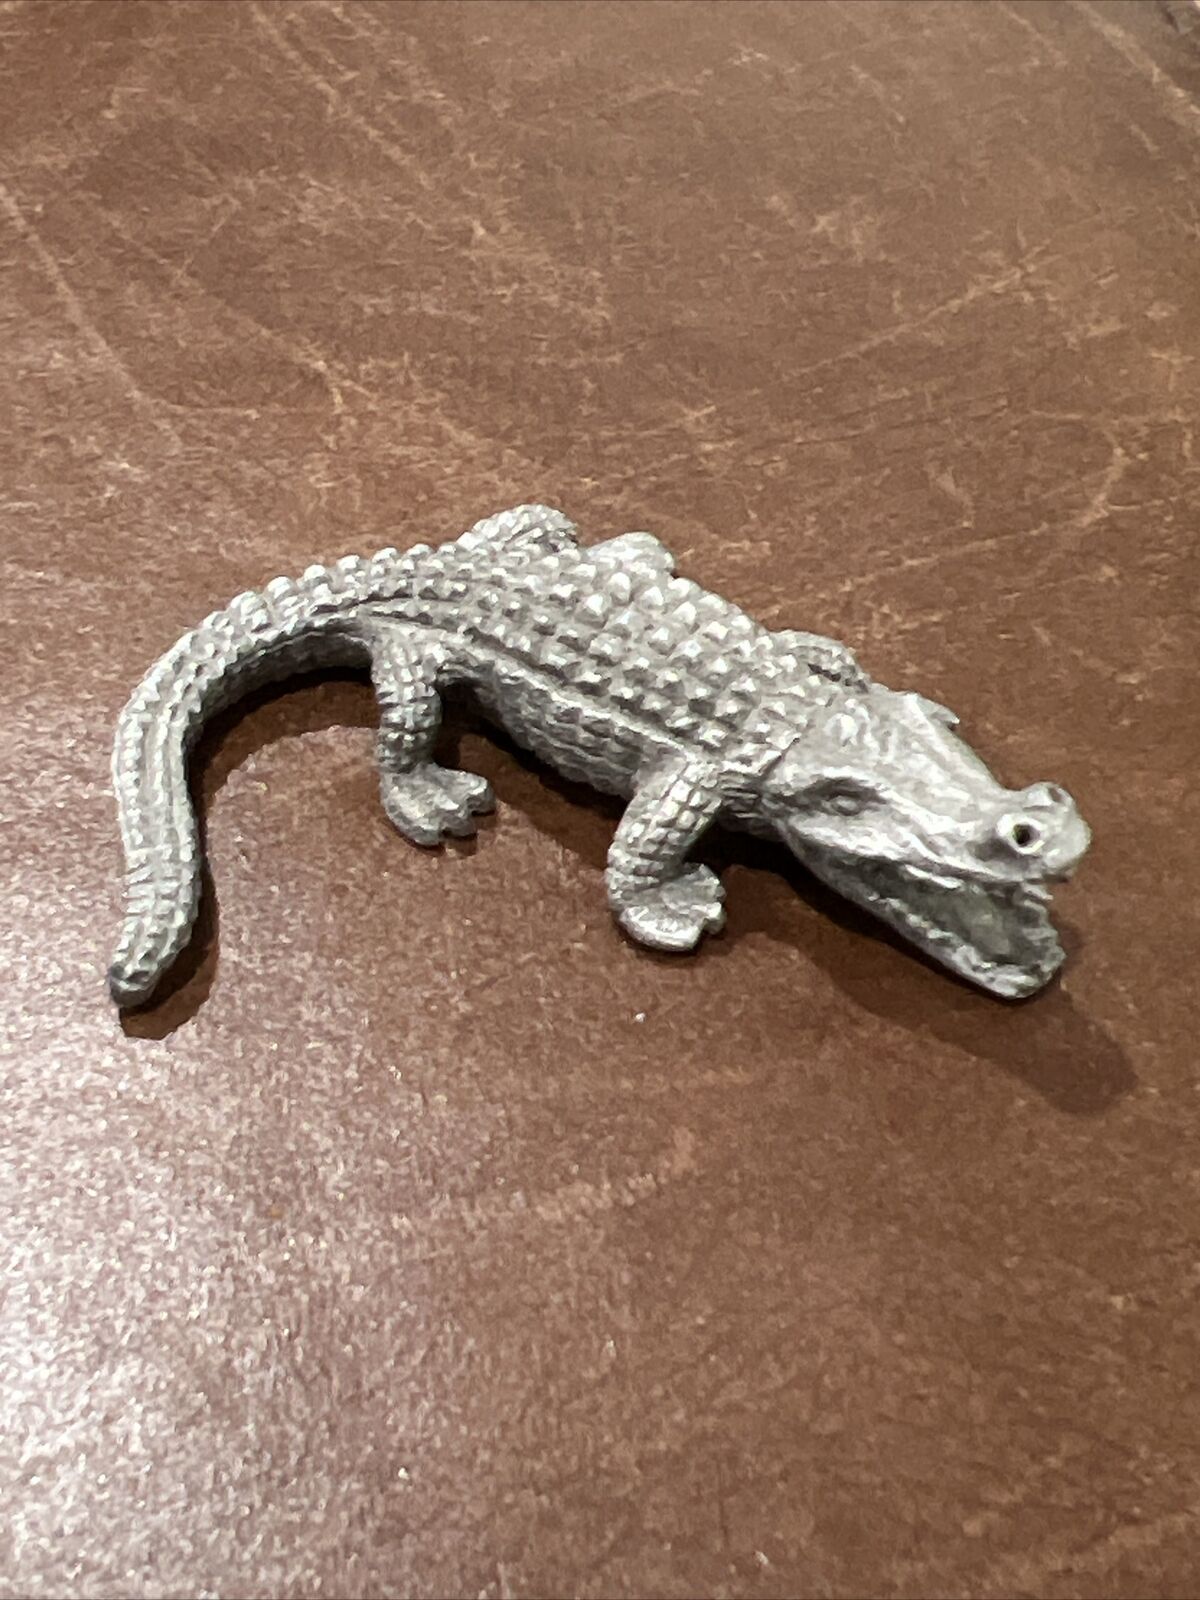 Pewter Alligator Gator Crocodile Miniature Figurine 2” Long Vintage 1980’s